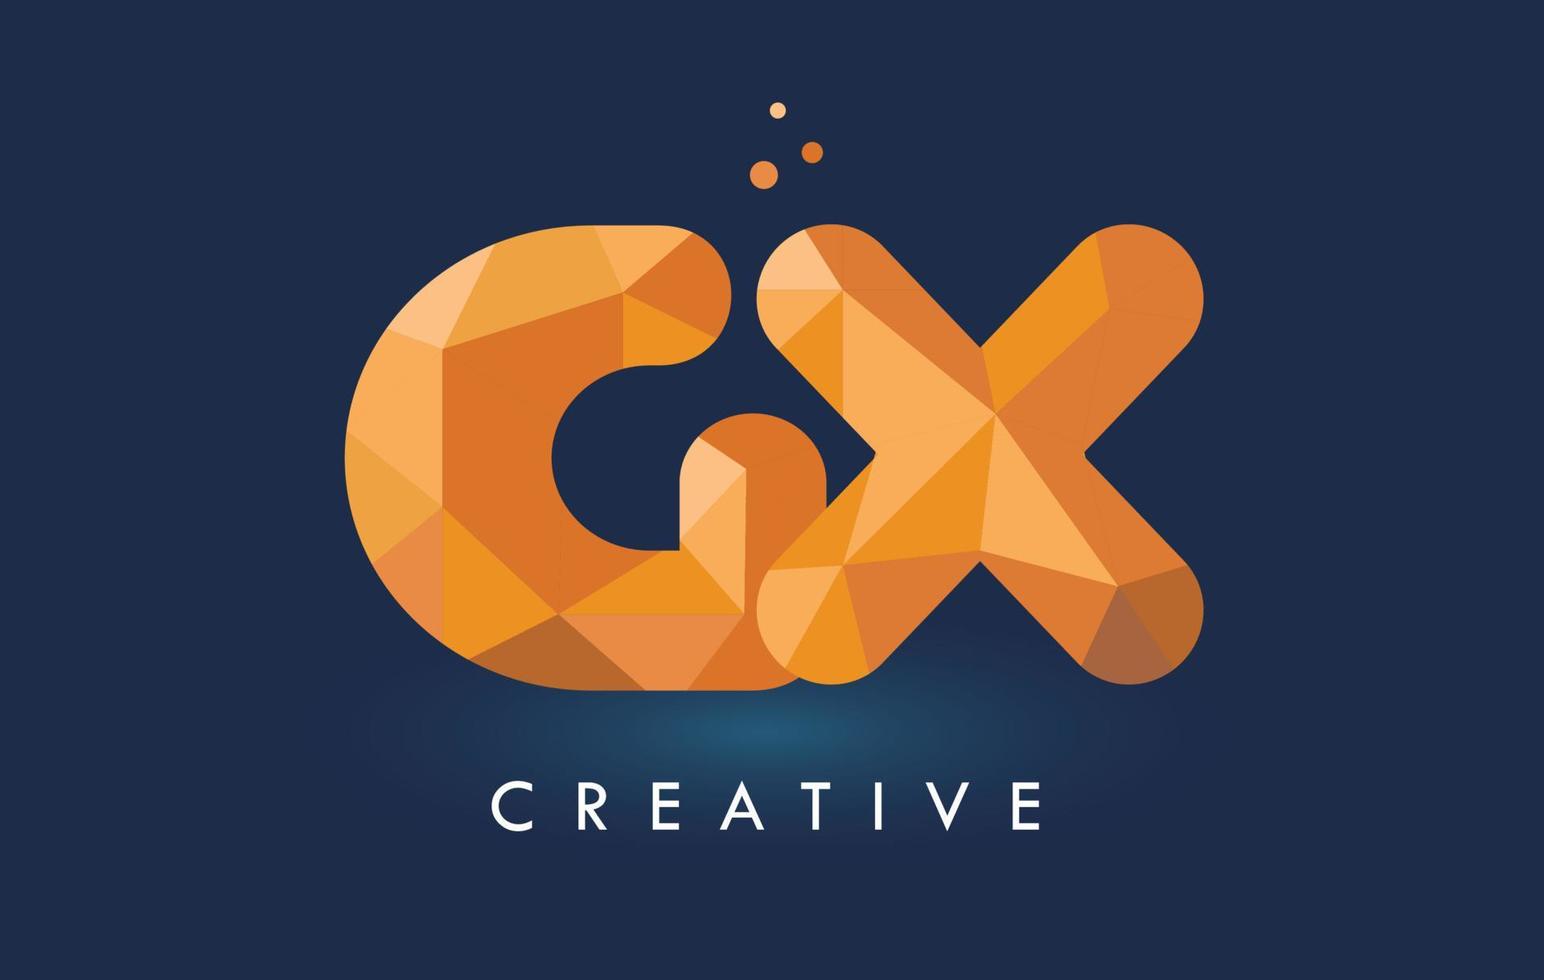 Letra gx con logo de triángulos de origami. diseño creativo de origami naranja amarillo. vector